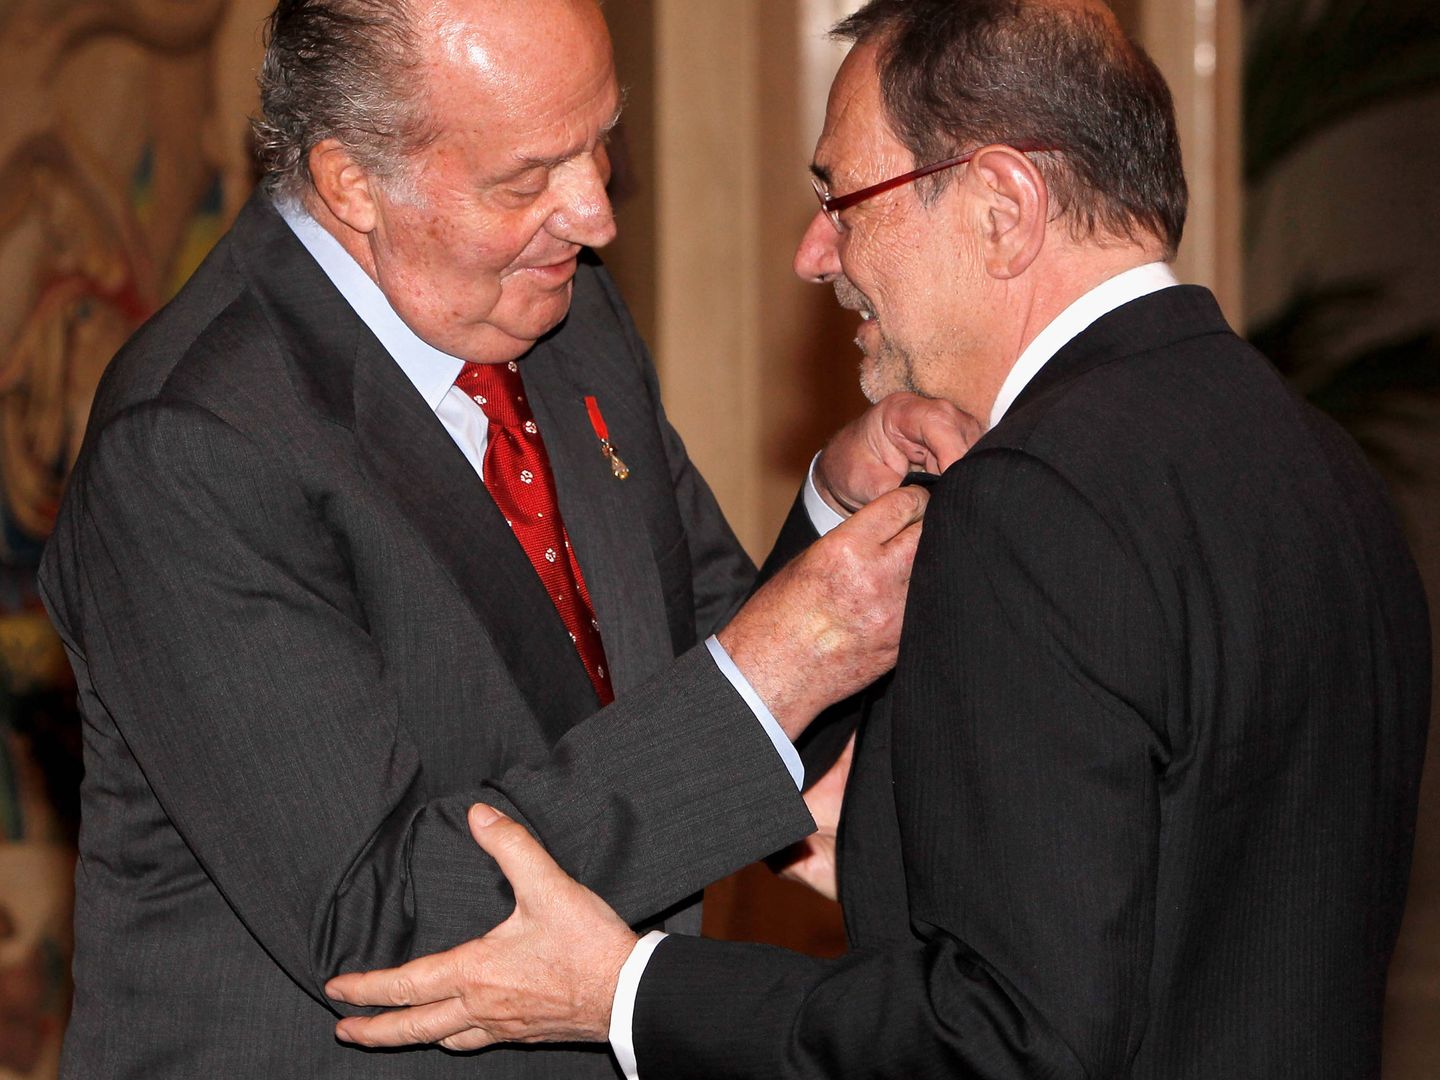  Juan Carlos I impone el Toisón de Oro a Solana. (Getty)